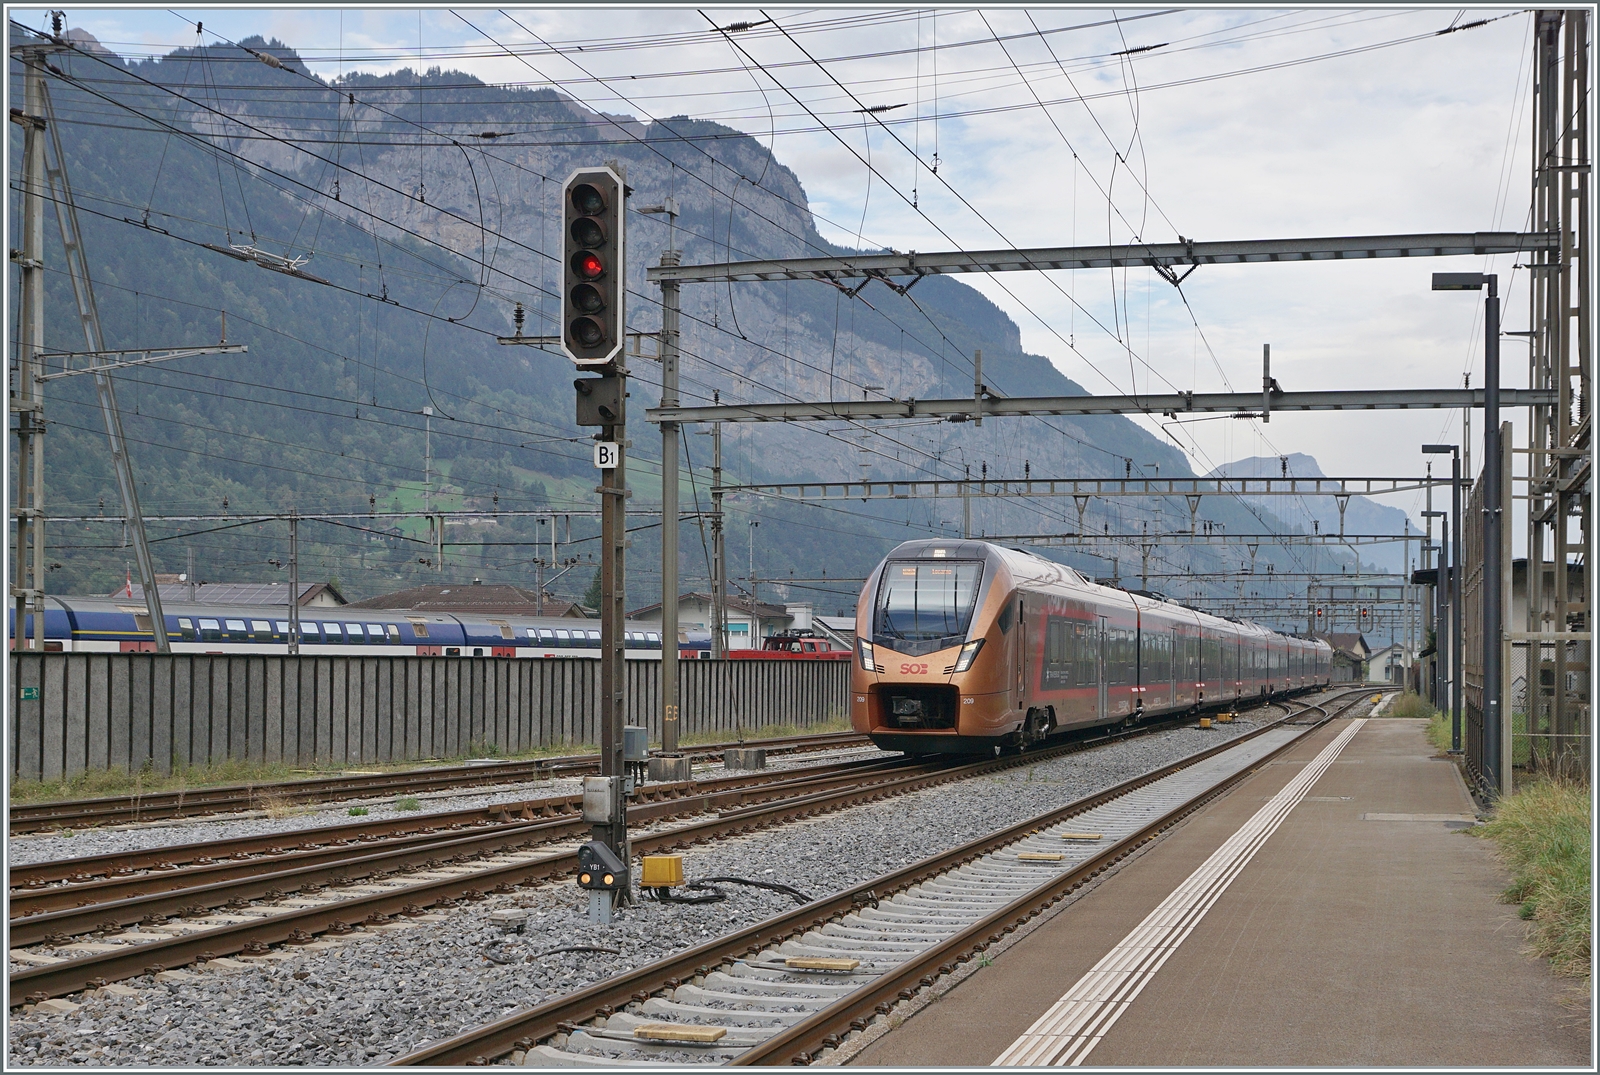 Der SOB  Traverso  RABe 526 209 als  Treno Gotthardo  von Basel nach Locarno erreicht Erstfeld. Im Hintergrund, hinter einer (unnützen) Lärmschutzwand rangieren SBB Aem 940 Züricher S-Bahn Doppelstock Wagen.

19. Oktober 2023